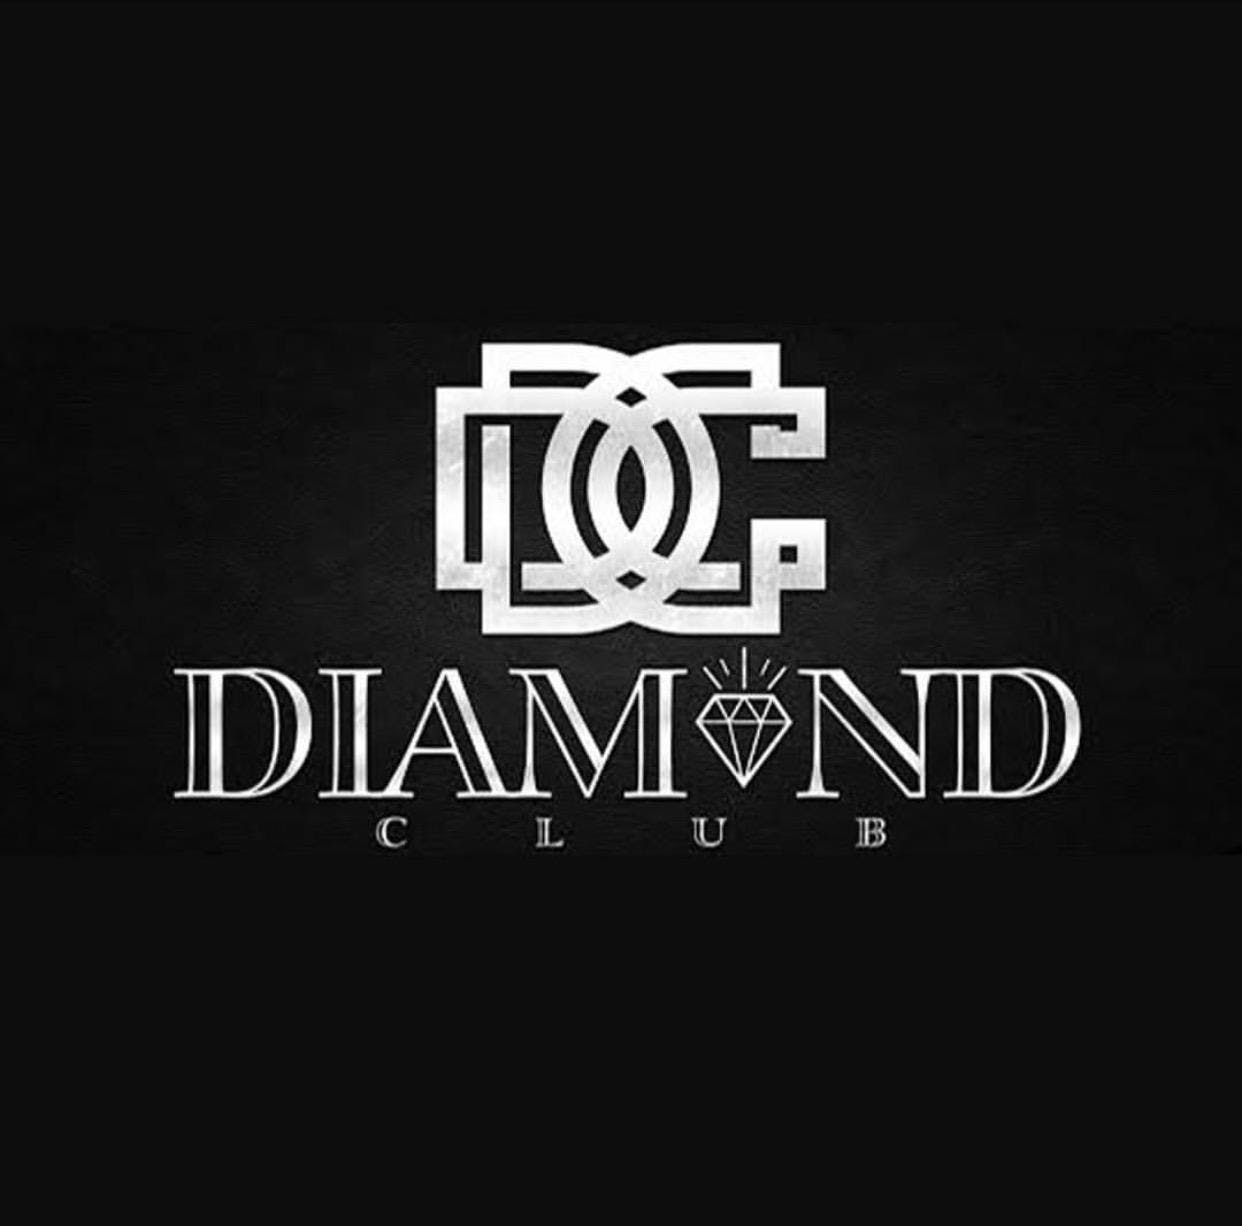 Diamond Club Logo - DIAMOND CLUB BIRTHDAY PACKAGE - 31 AUG 2018